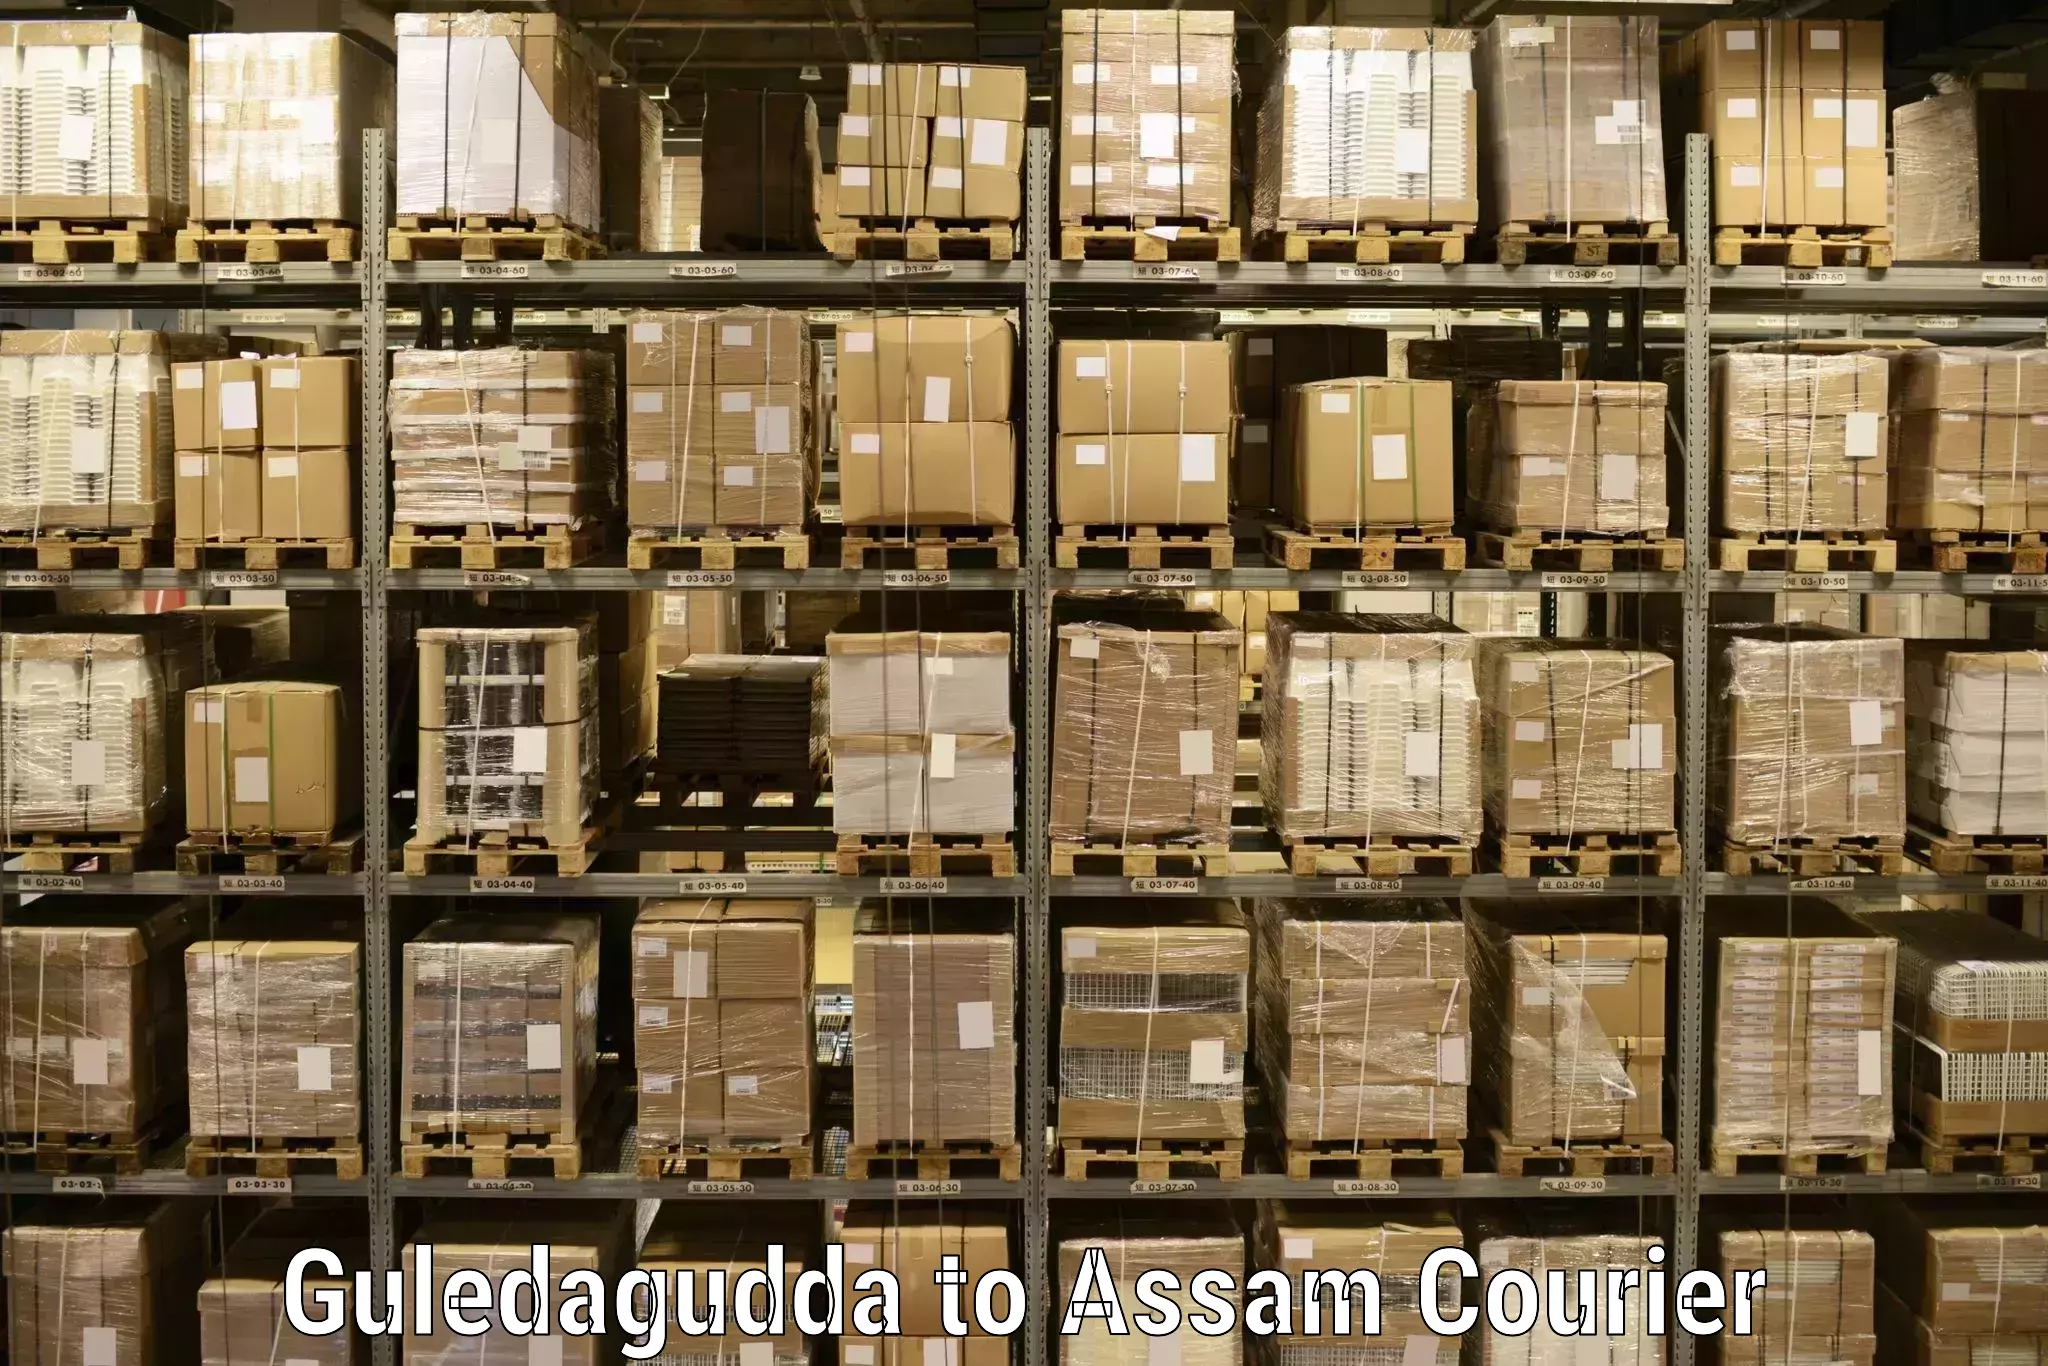 Logistics management Guledagudda to Nagaon